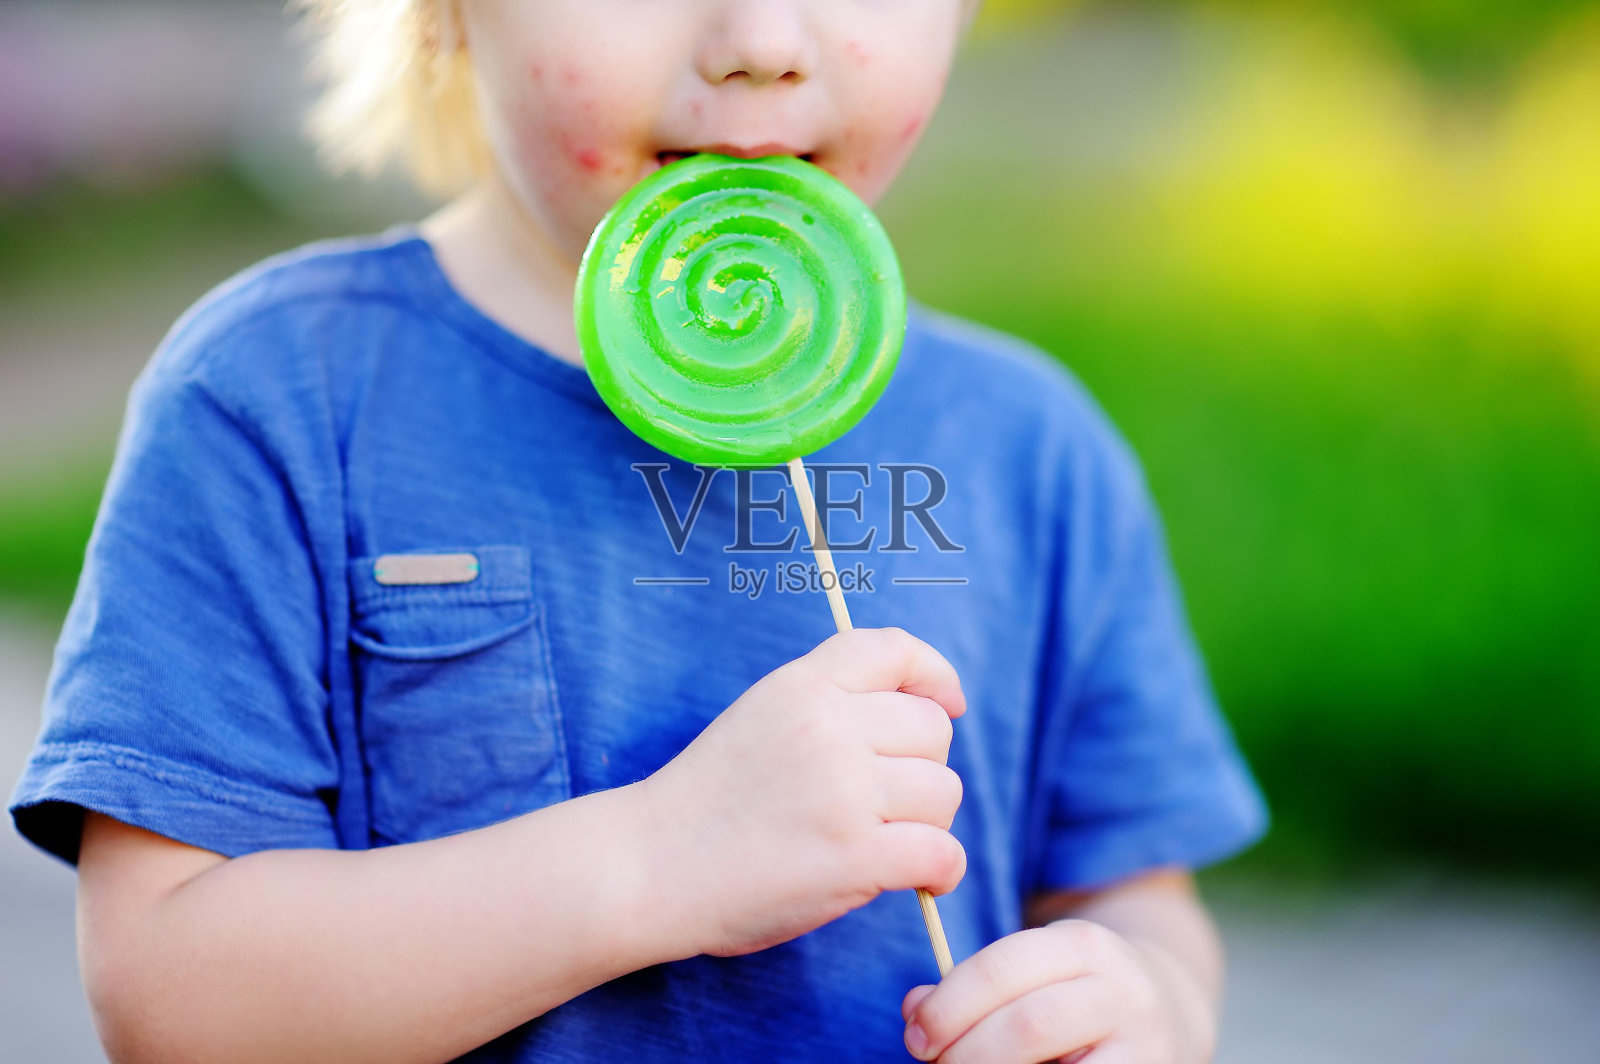 有过敏反应的孩子吃了大的绿色棒棒糖照片摄影图片